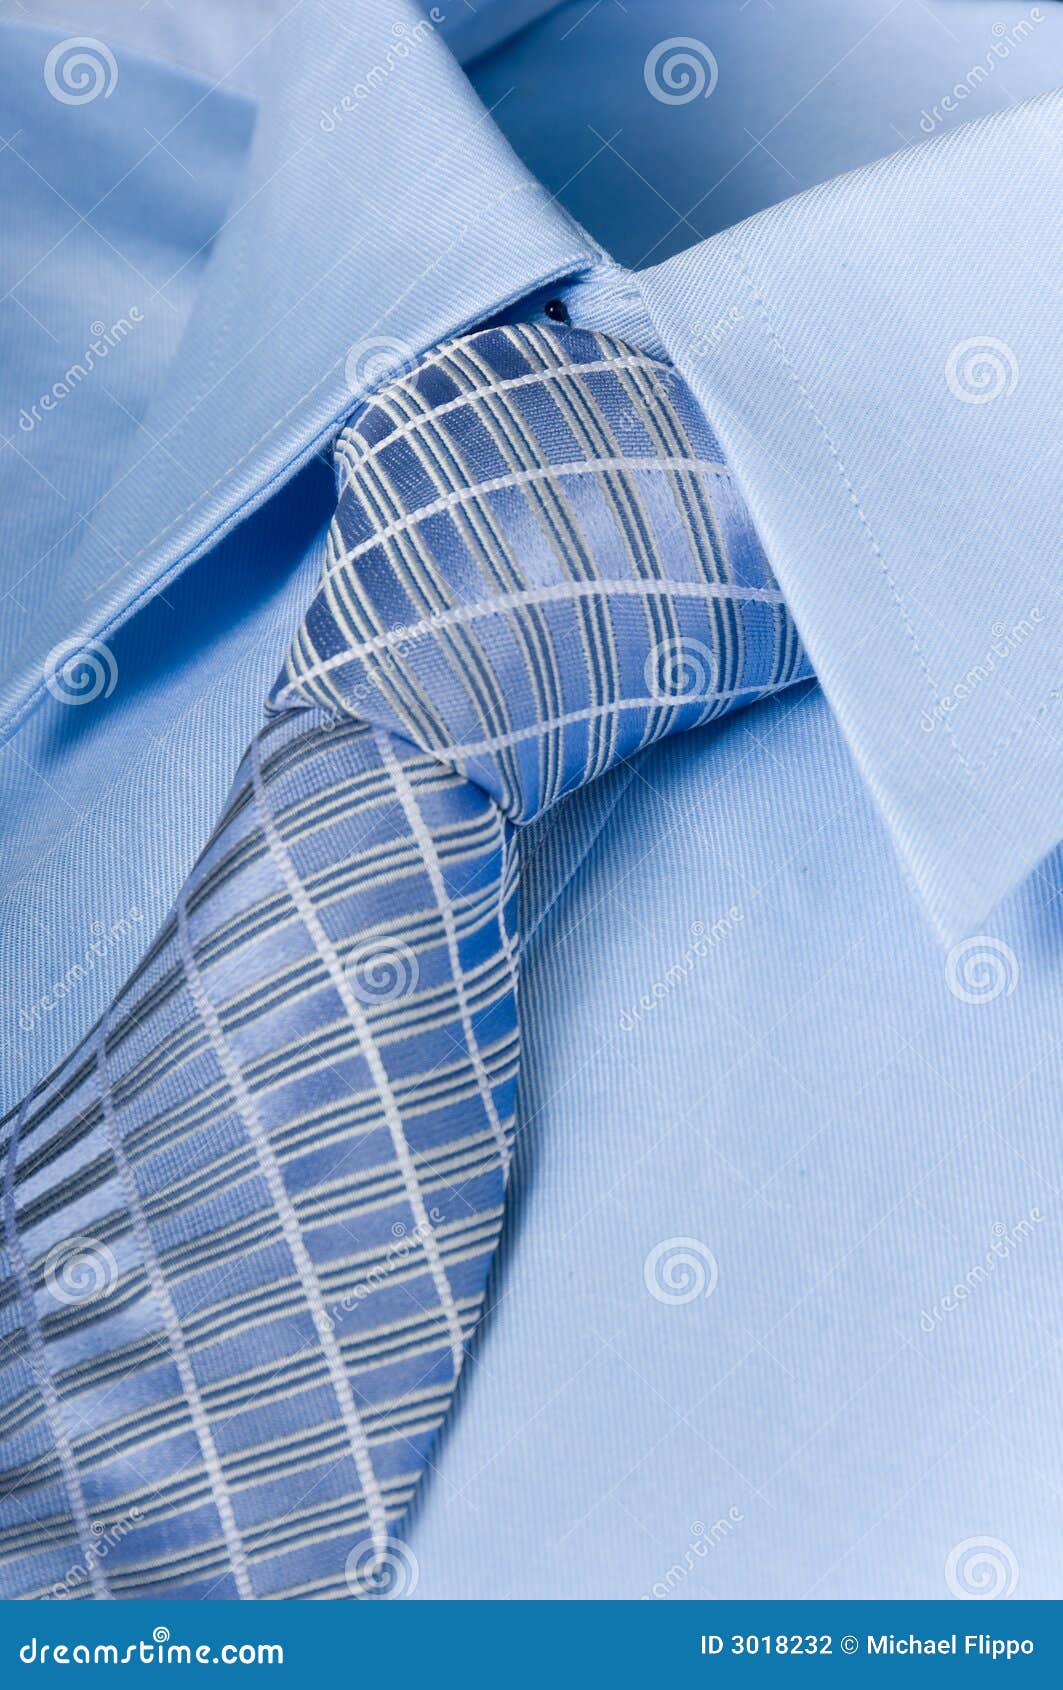 Camisa Corbata Del Foto de archivo Imagen de tela, azul: 3018232